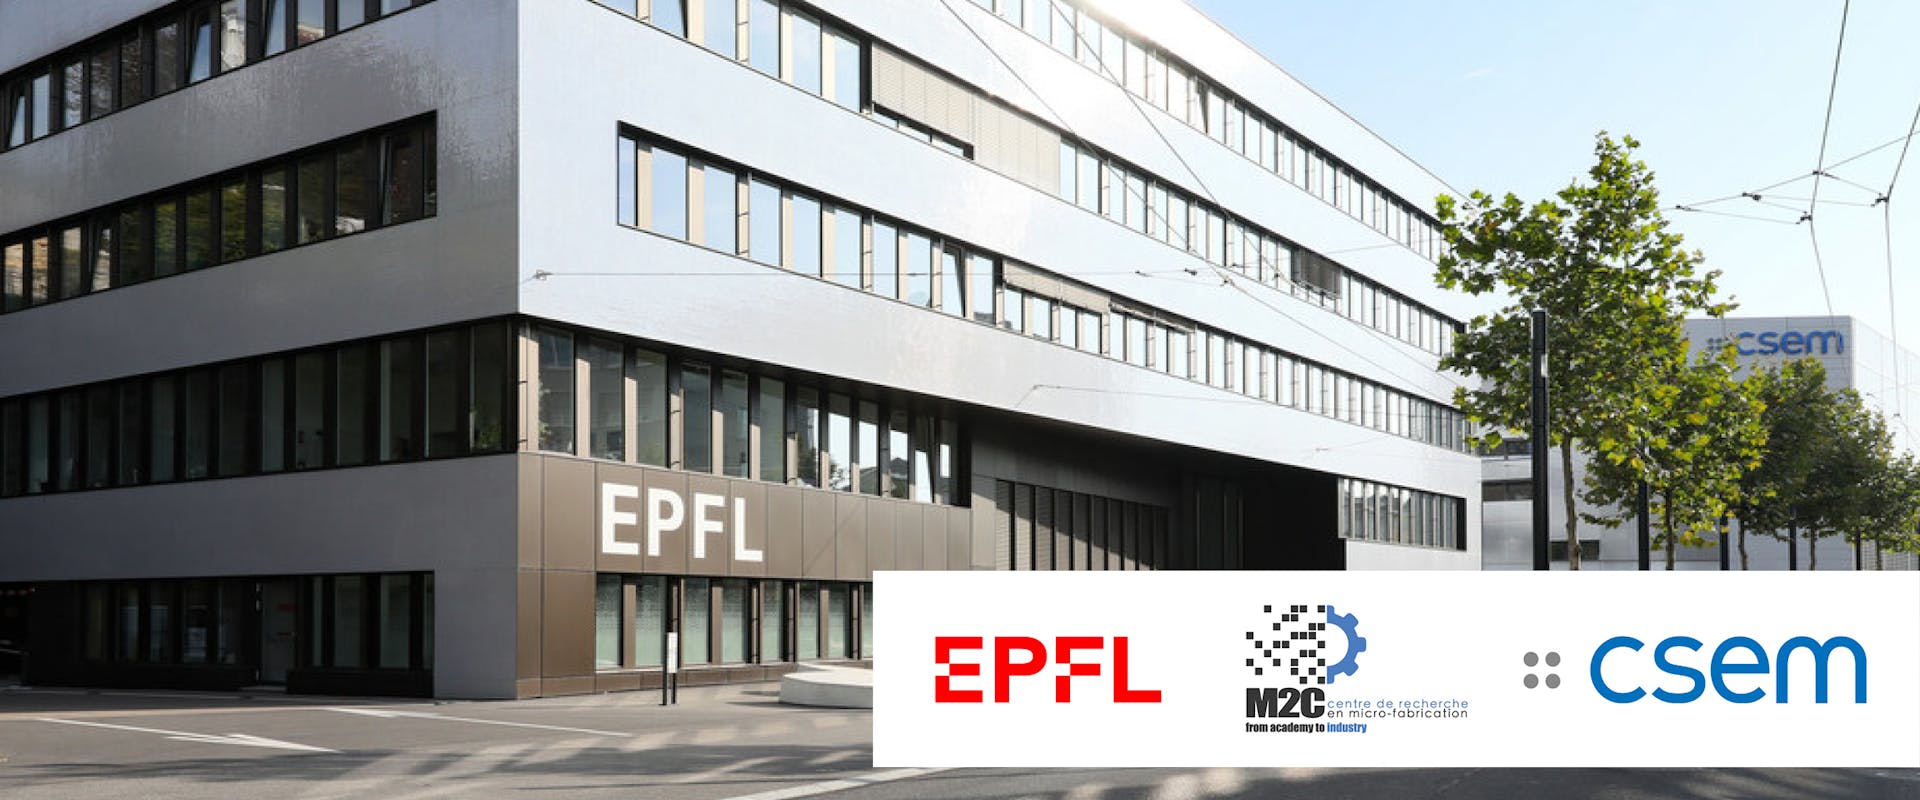 EPFL building in Neuchâtel